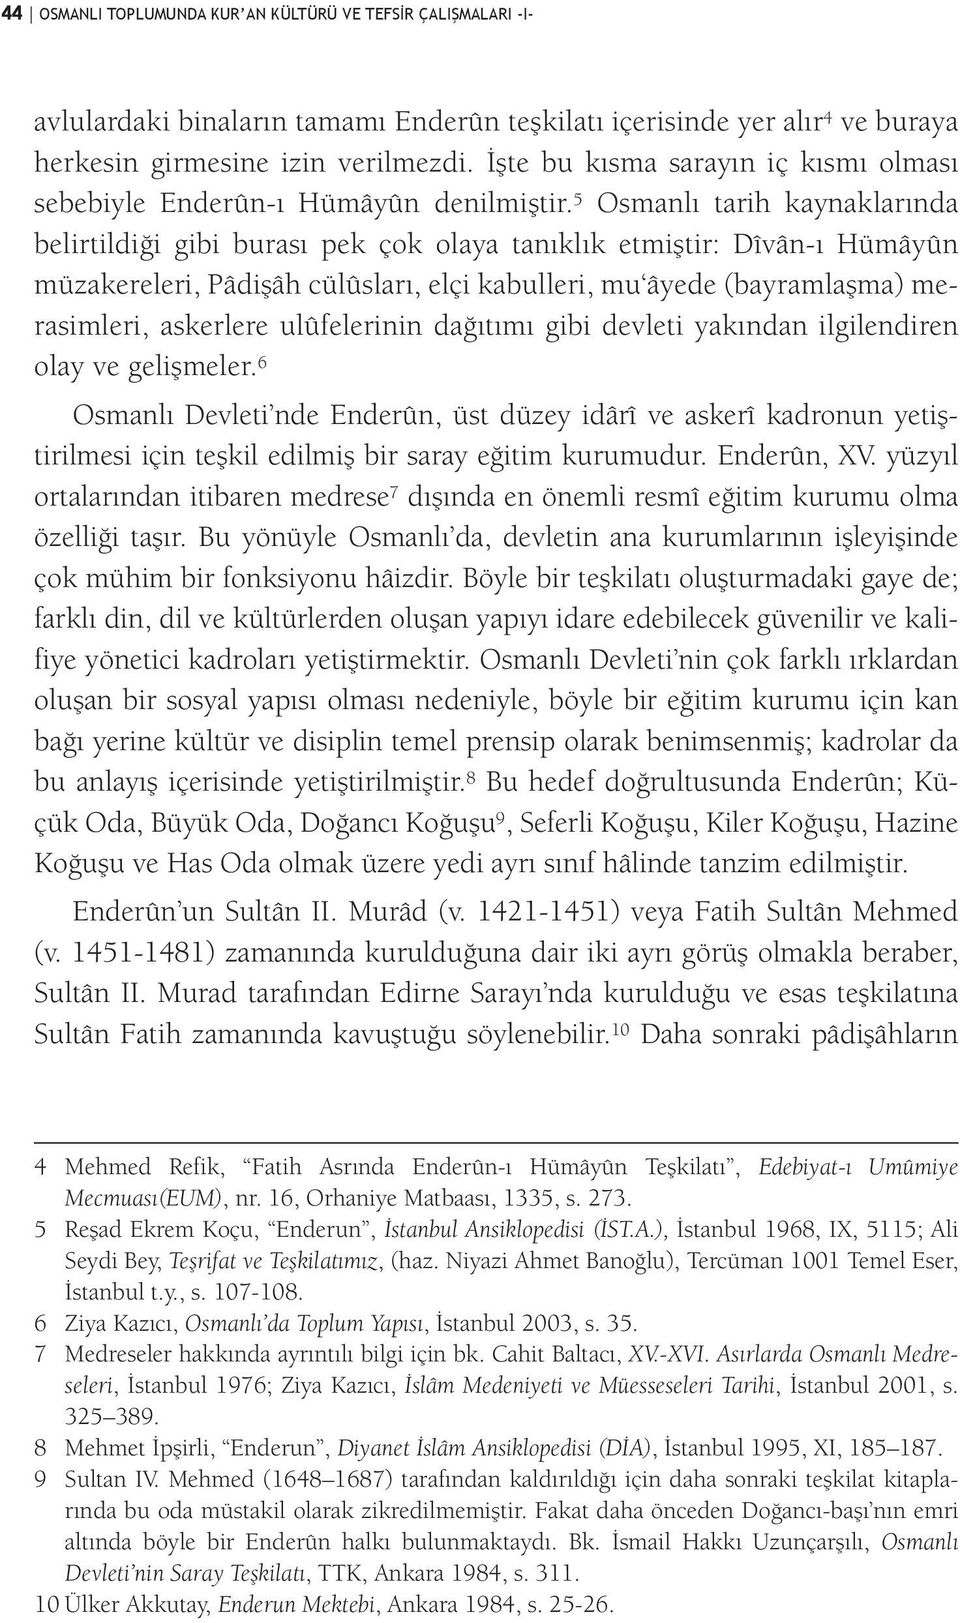 5 Osmanlı tarih kaynaklarında belirtildiği gibi burası pek çok olaya tanıklık etmiştir: Dîvân-ı Hümâyûn müzakereleri, Pâdişâh cülûsları, elçi kabulleri, mu âyede (bayramlaşma) merasimleri, askerlere